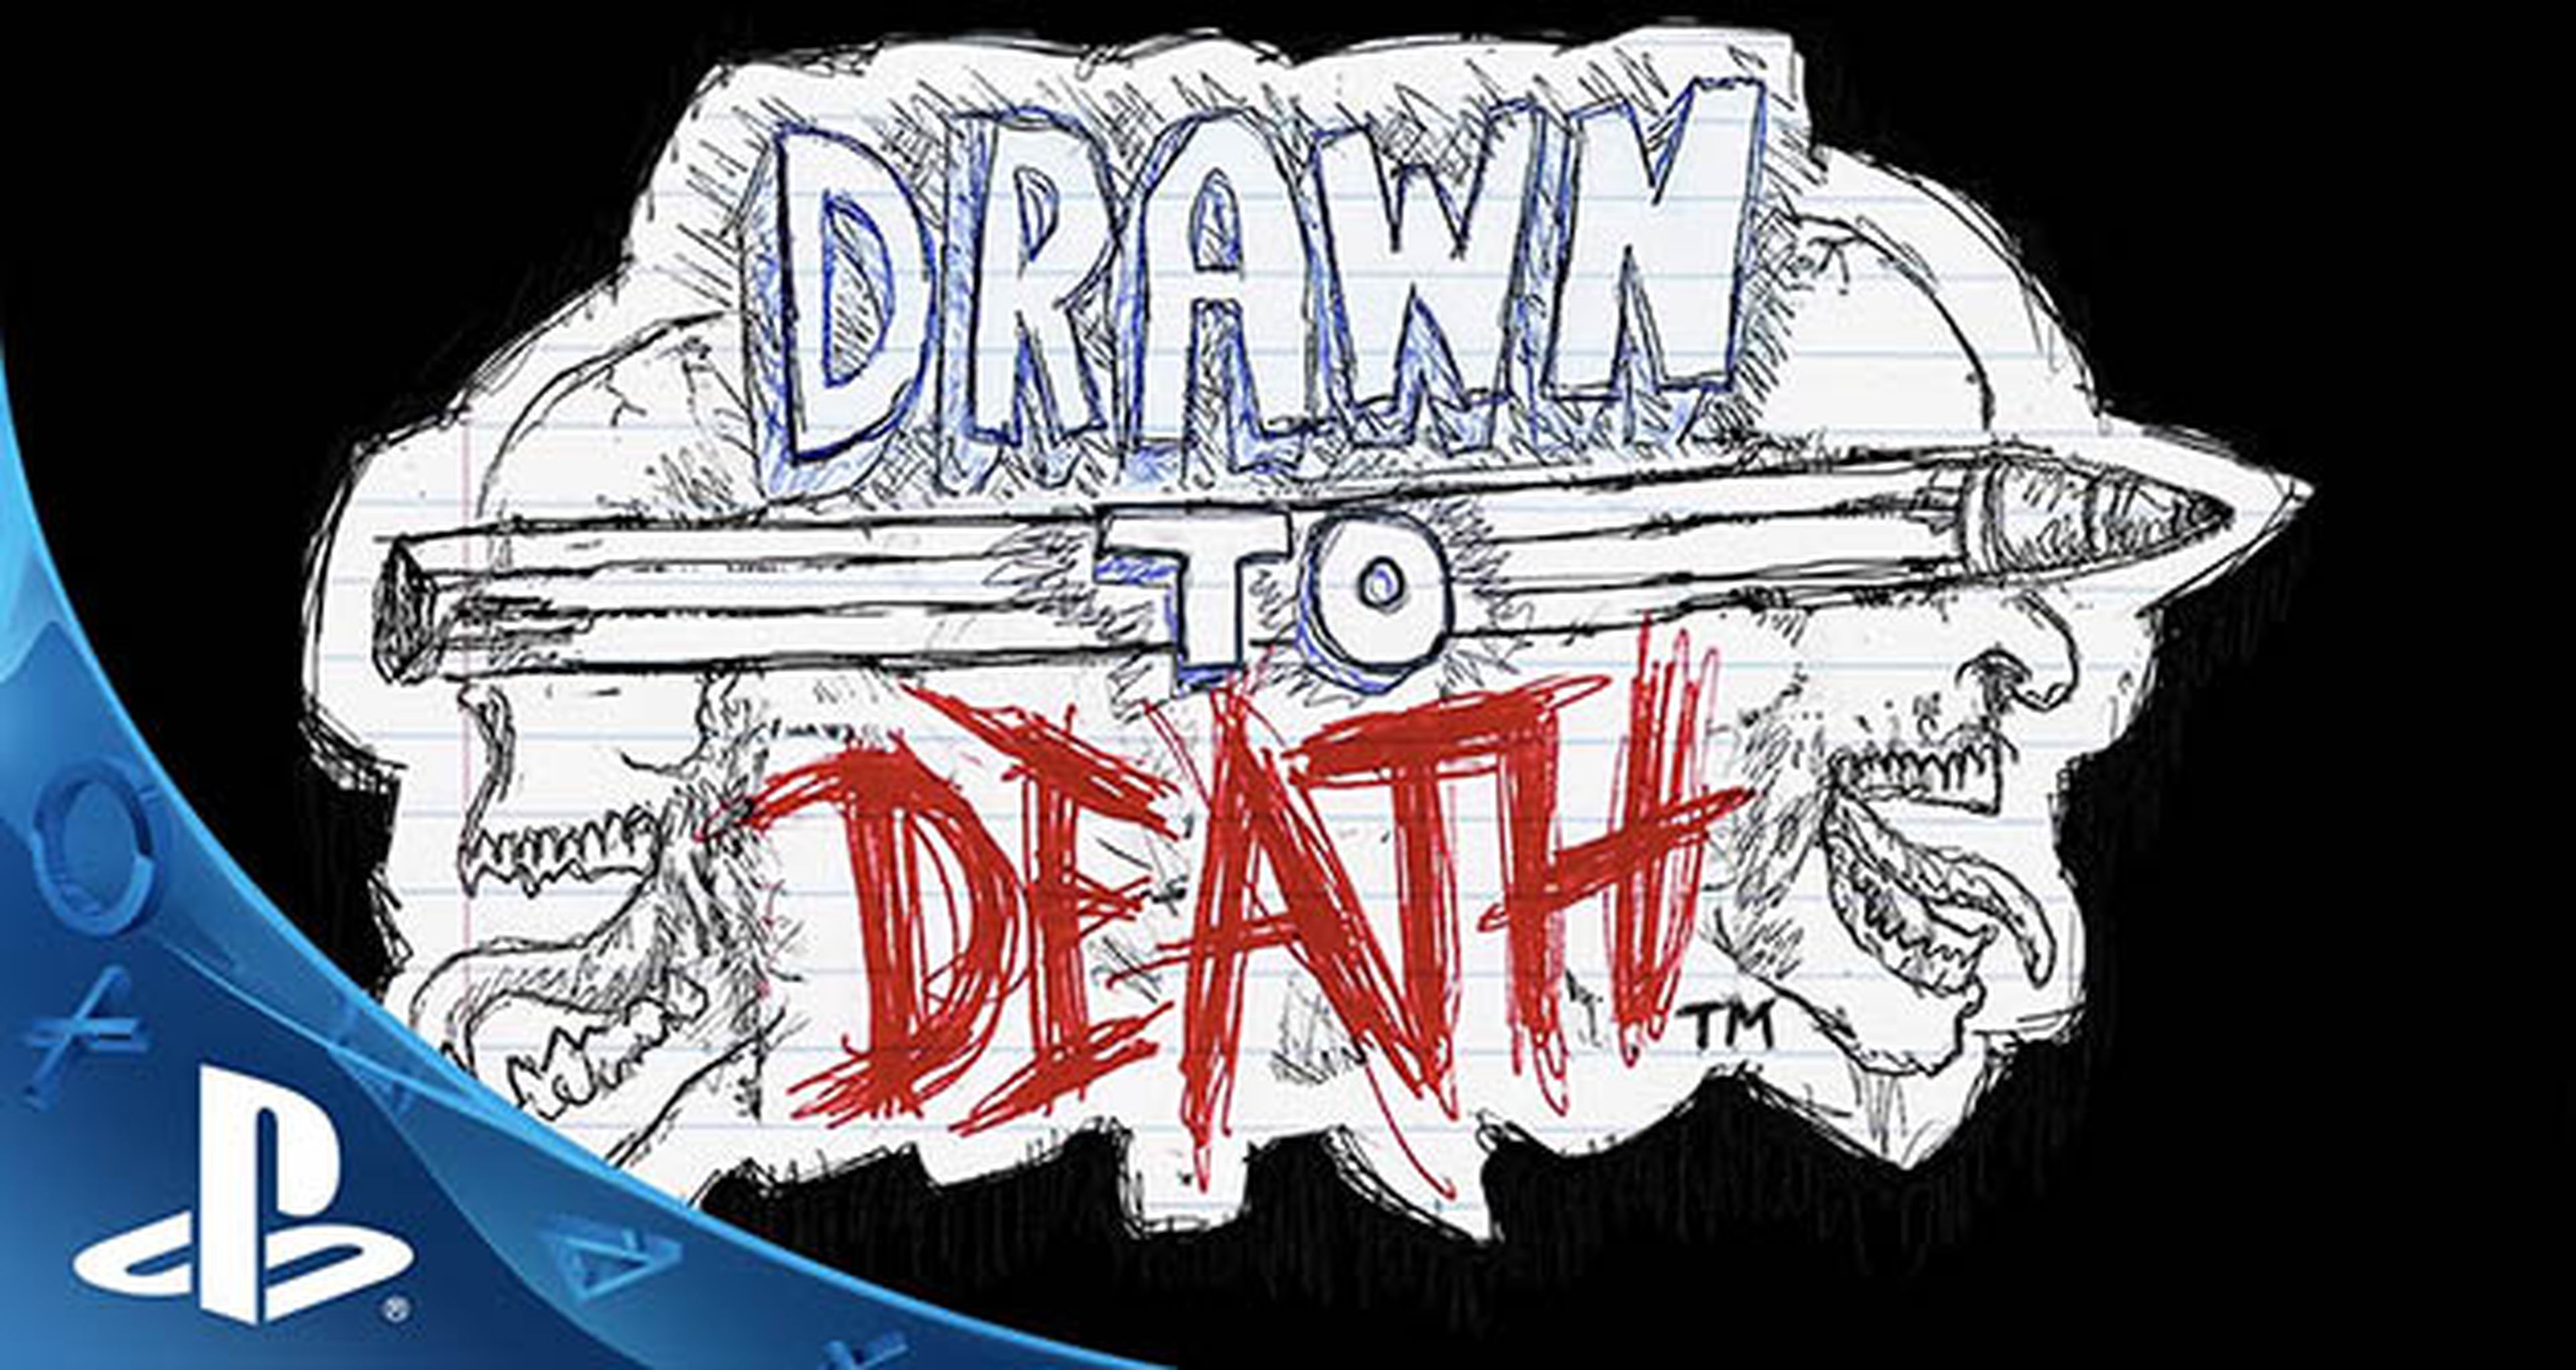 El exclusivo de PS4 Drawn to Death tiene nuevo artwork y gameplay